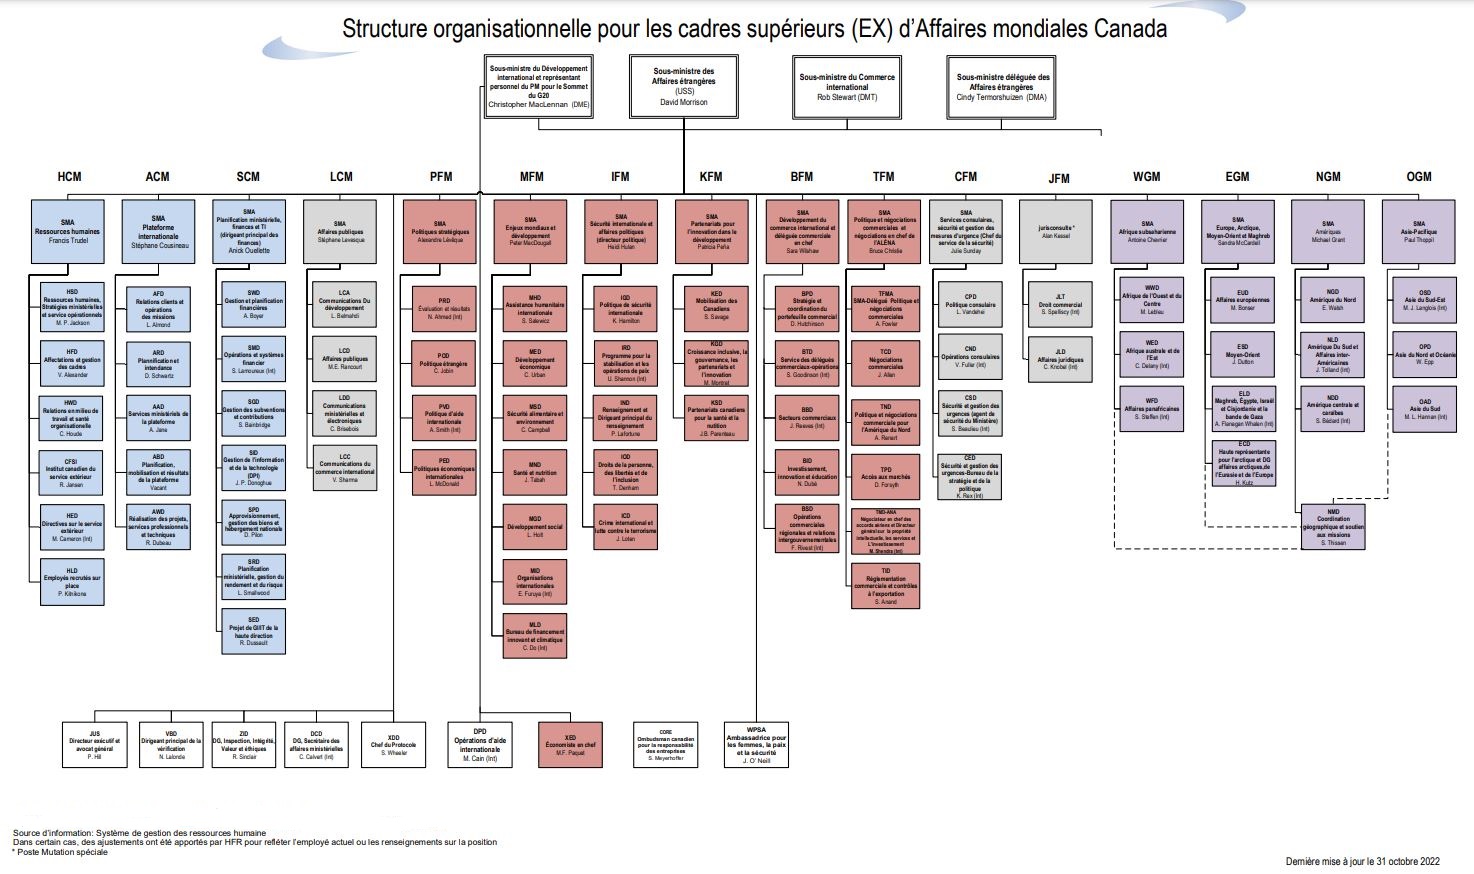 Structure organisationnelle de la direction (EX) d'Affaires mondiales Canada